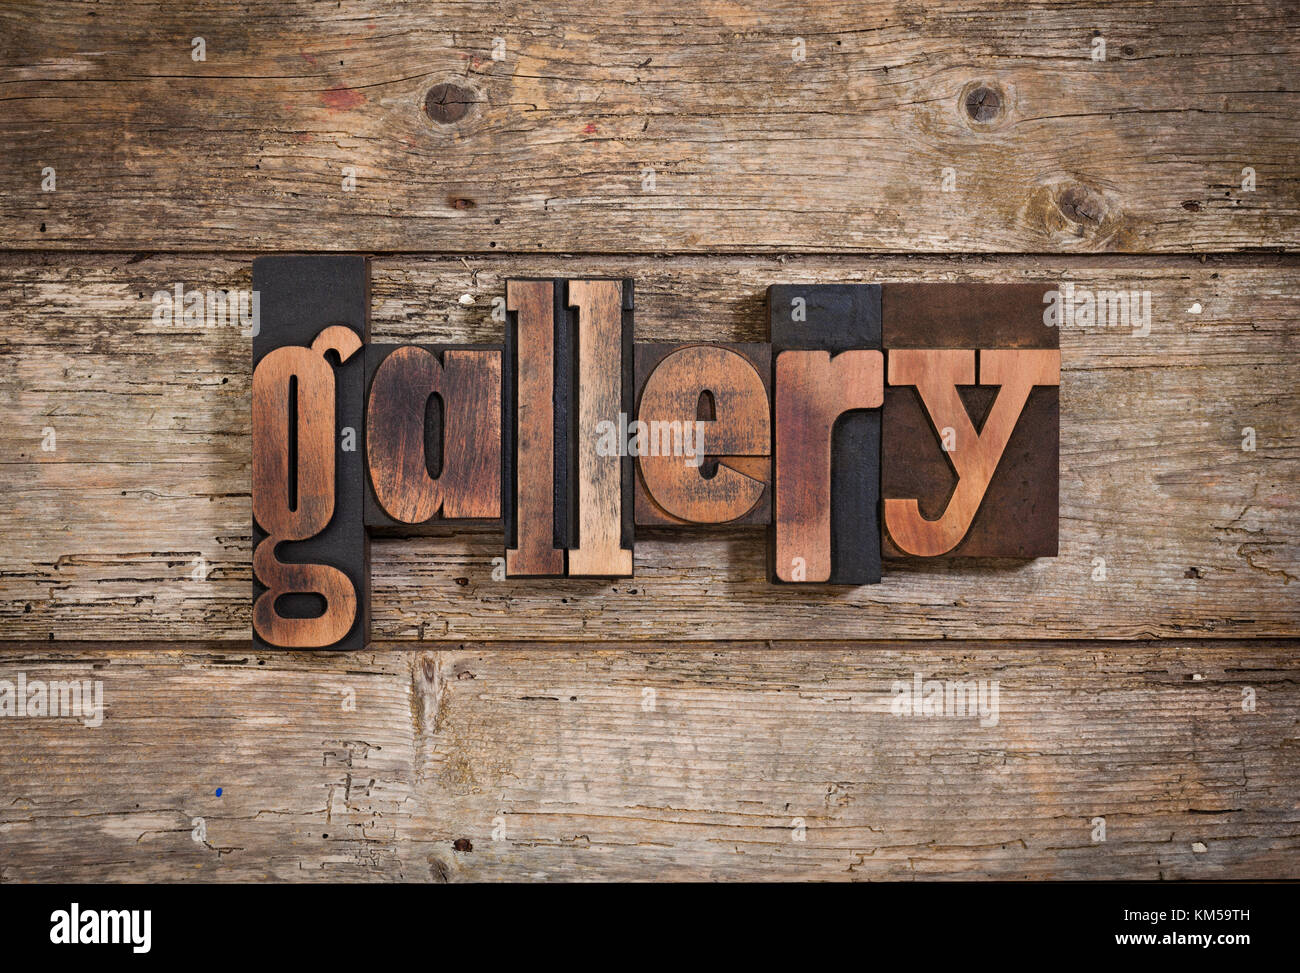 Galerie, einzelnes Wort mit Vintage Buchdruck Blöcke auf rustikalen Holzmöbeln Hintergrund Stockfoto